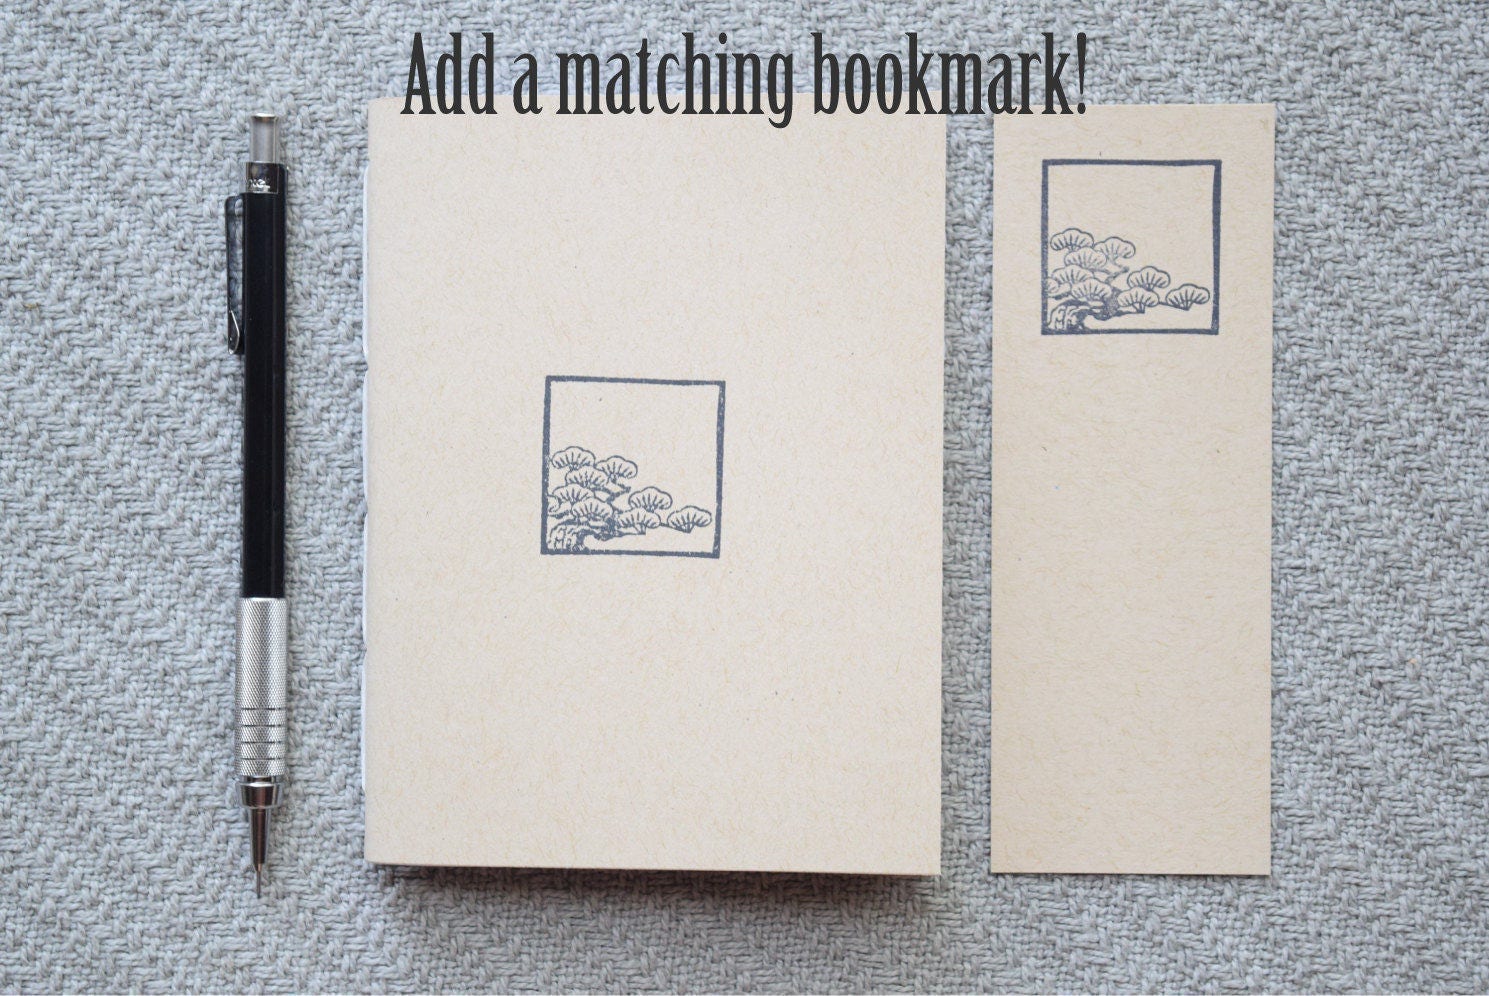 Kraft Brown Paper Notebook, Sketch Book Blank Notebook, Journal, Scrapbook  Supplies 